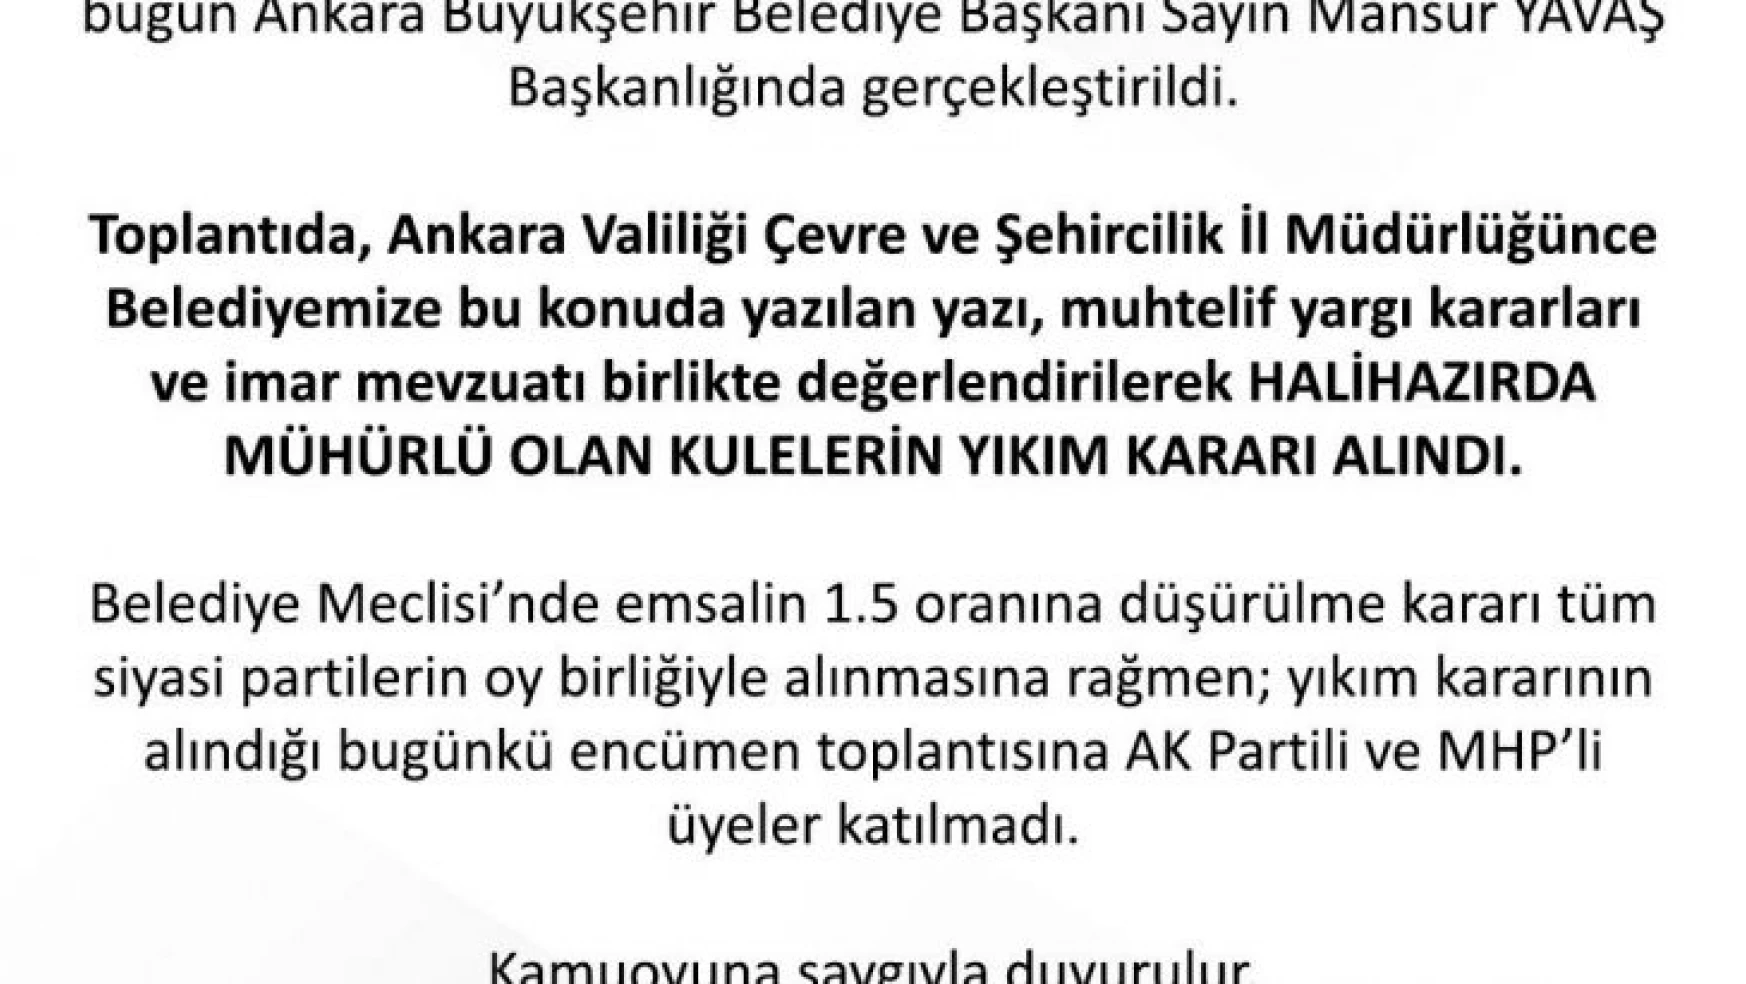 Ankara Büyükşehir Belediyesi, TOGO Kuleleri için yıkım kararı alındığını duyurdu